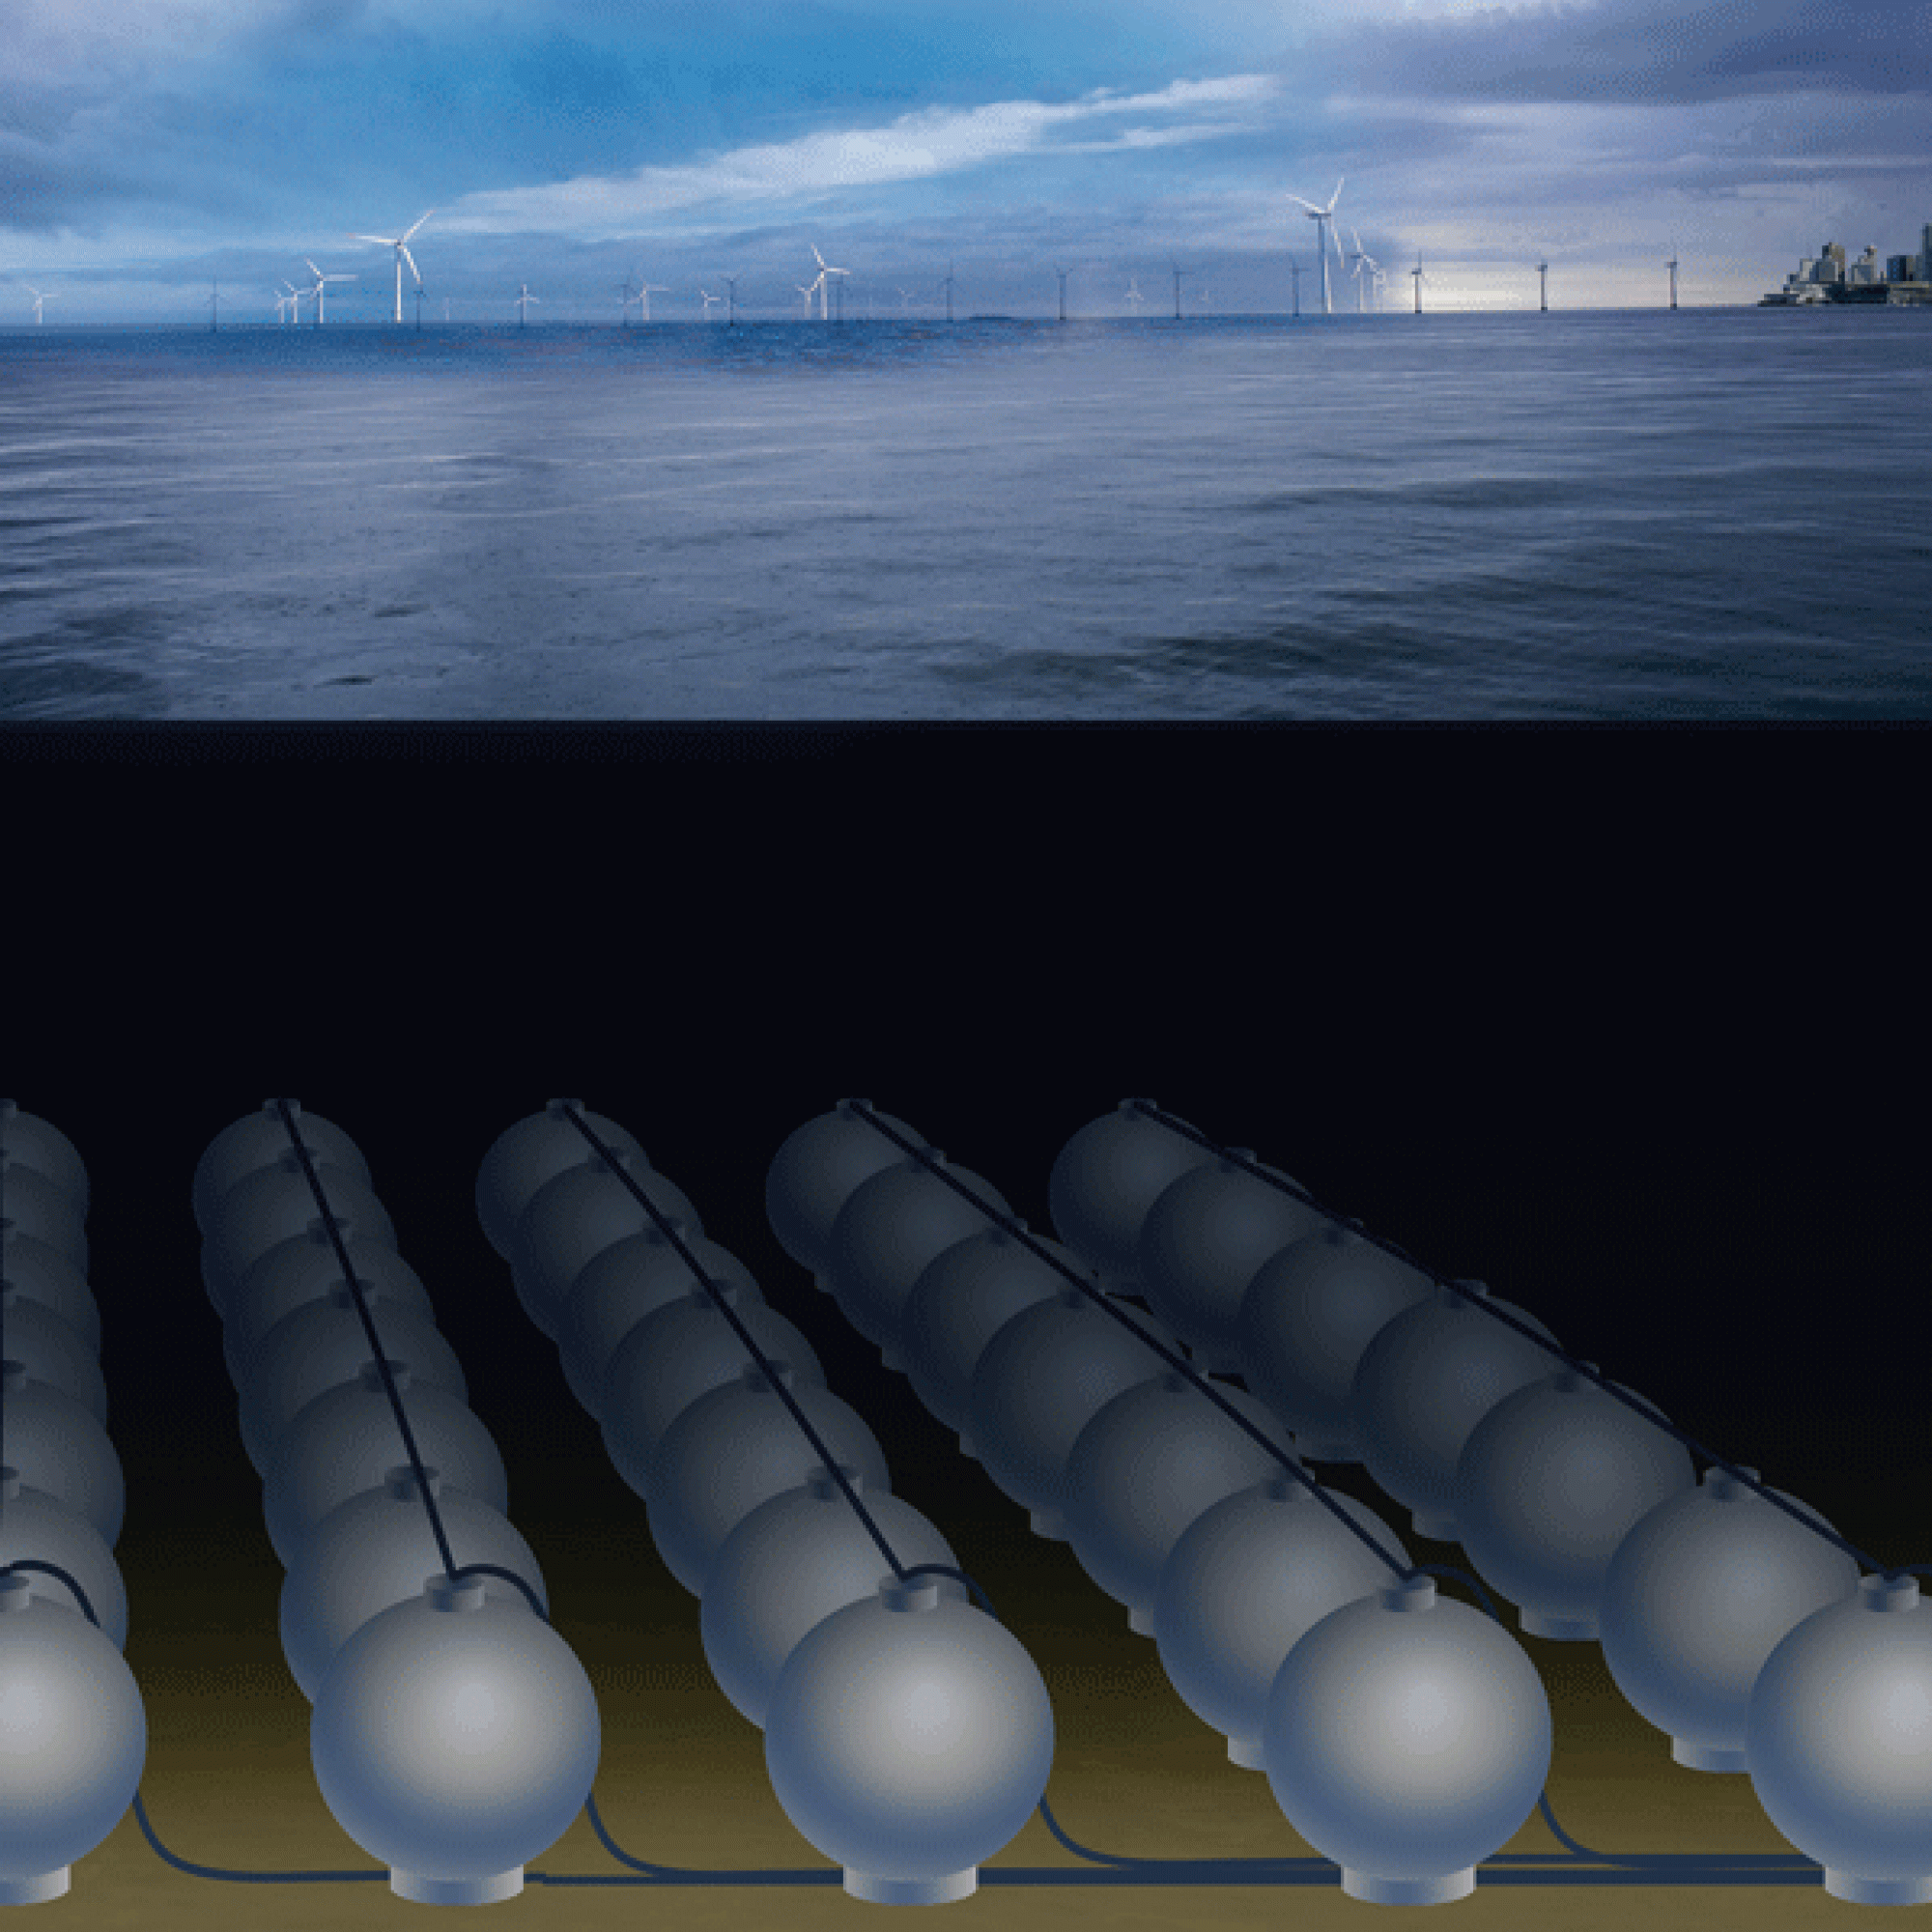 Konzept für ein Meeres-Pumpspeicherkraftwerk mit vielen Kugelspeichern (zirka 30 Meter Durchmesser) in 600 bis 800 Metern Wassertiefe zur Zwischenspeicherung von Offshore-Strom.